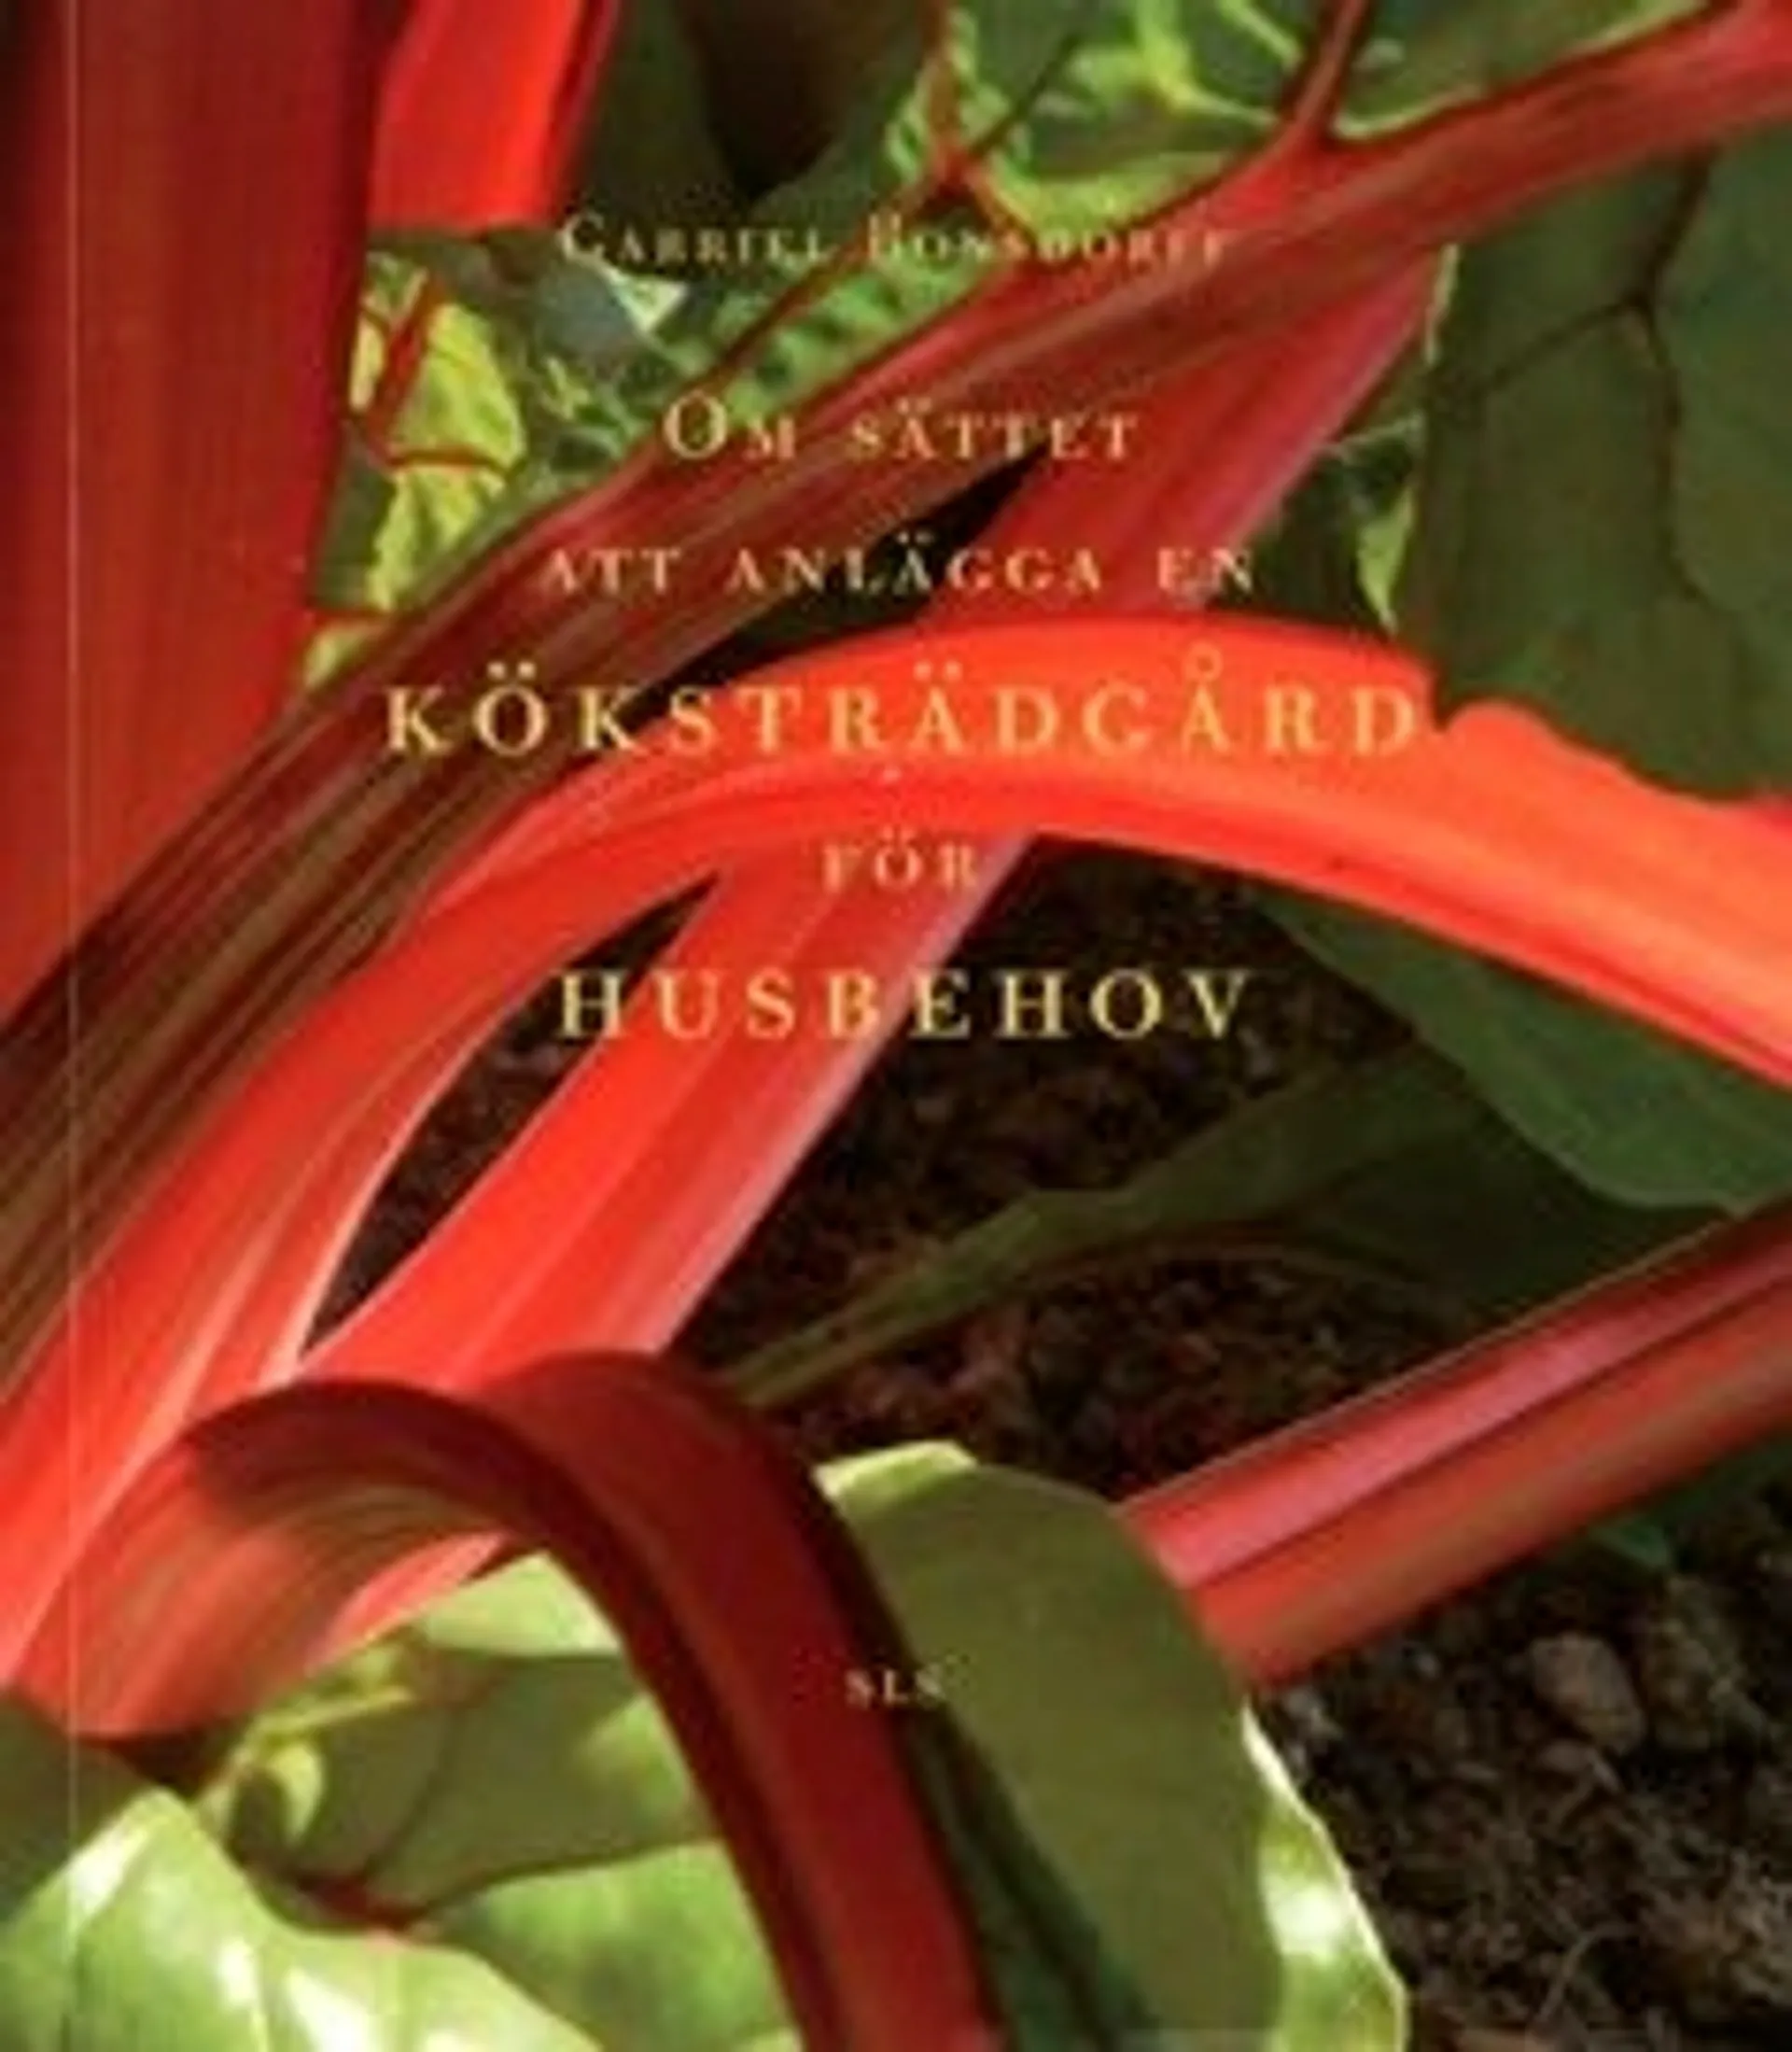 Bonsdorff, Om sättet att anlägga en Köksträdgård för Husbehov